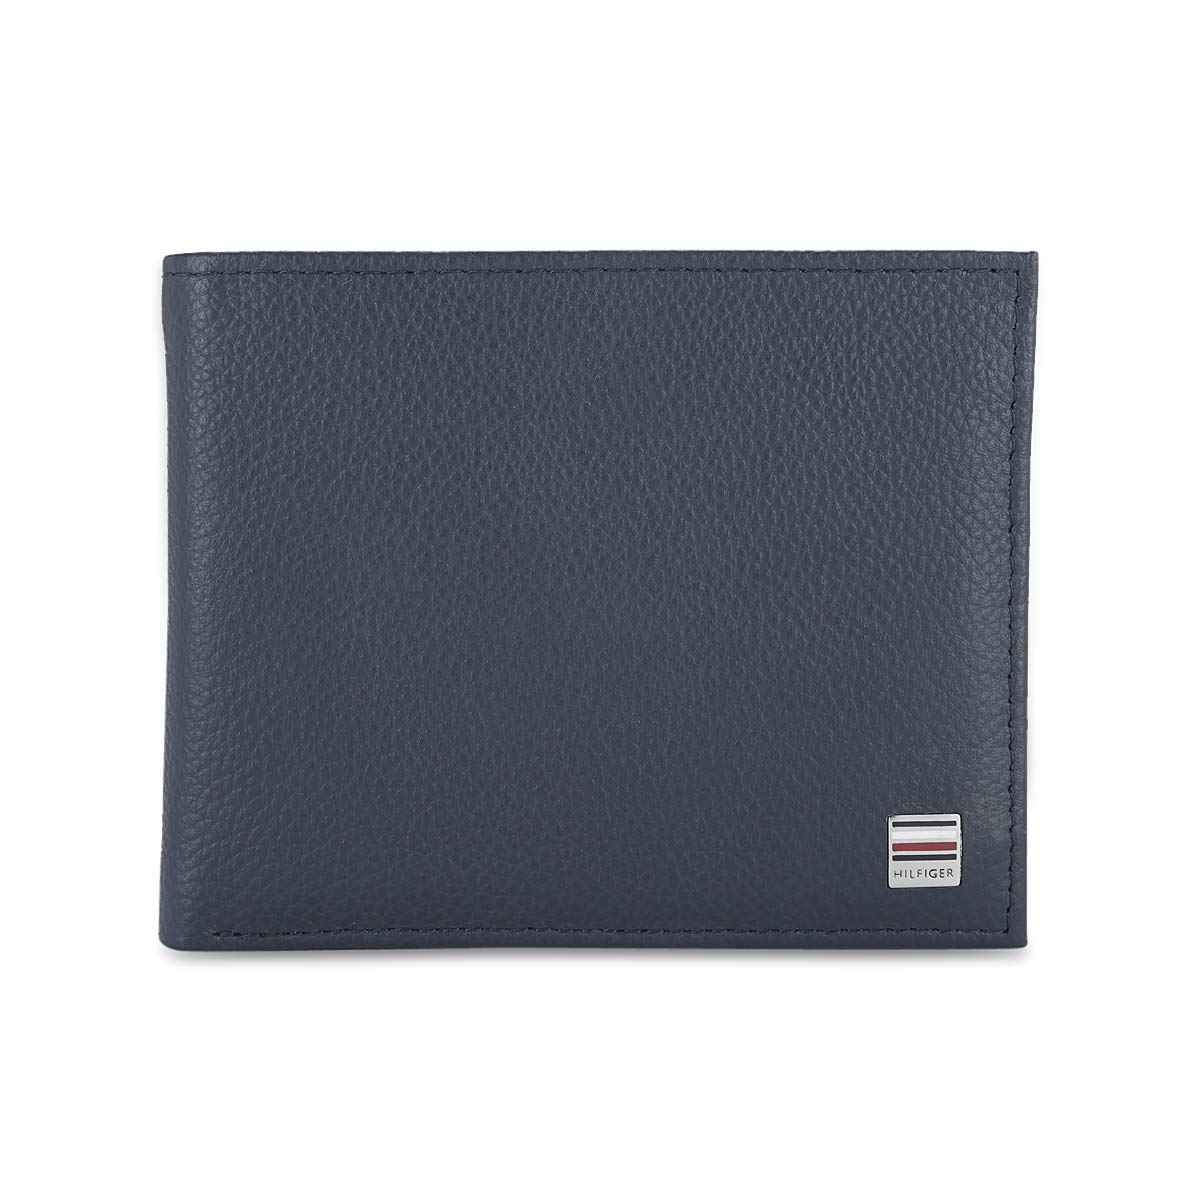 Buy Fastrack Black Leather Men's Wallet (C0368LBK02) at Amazon.in